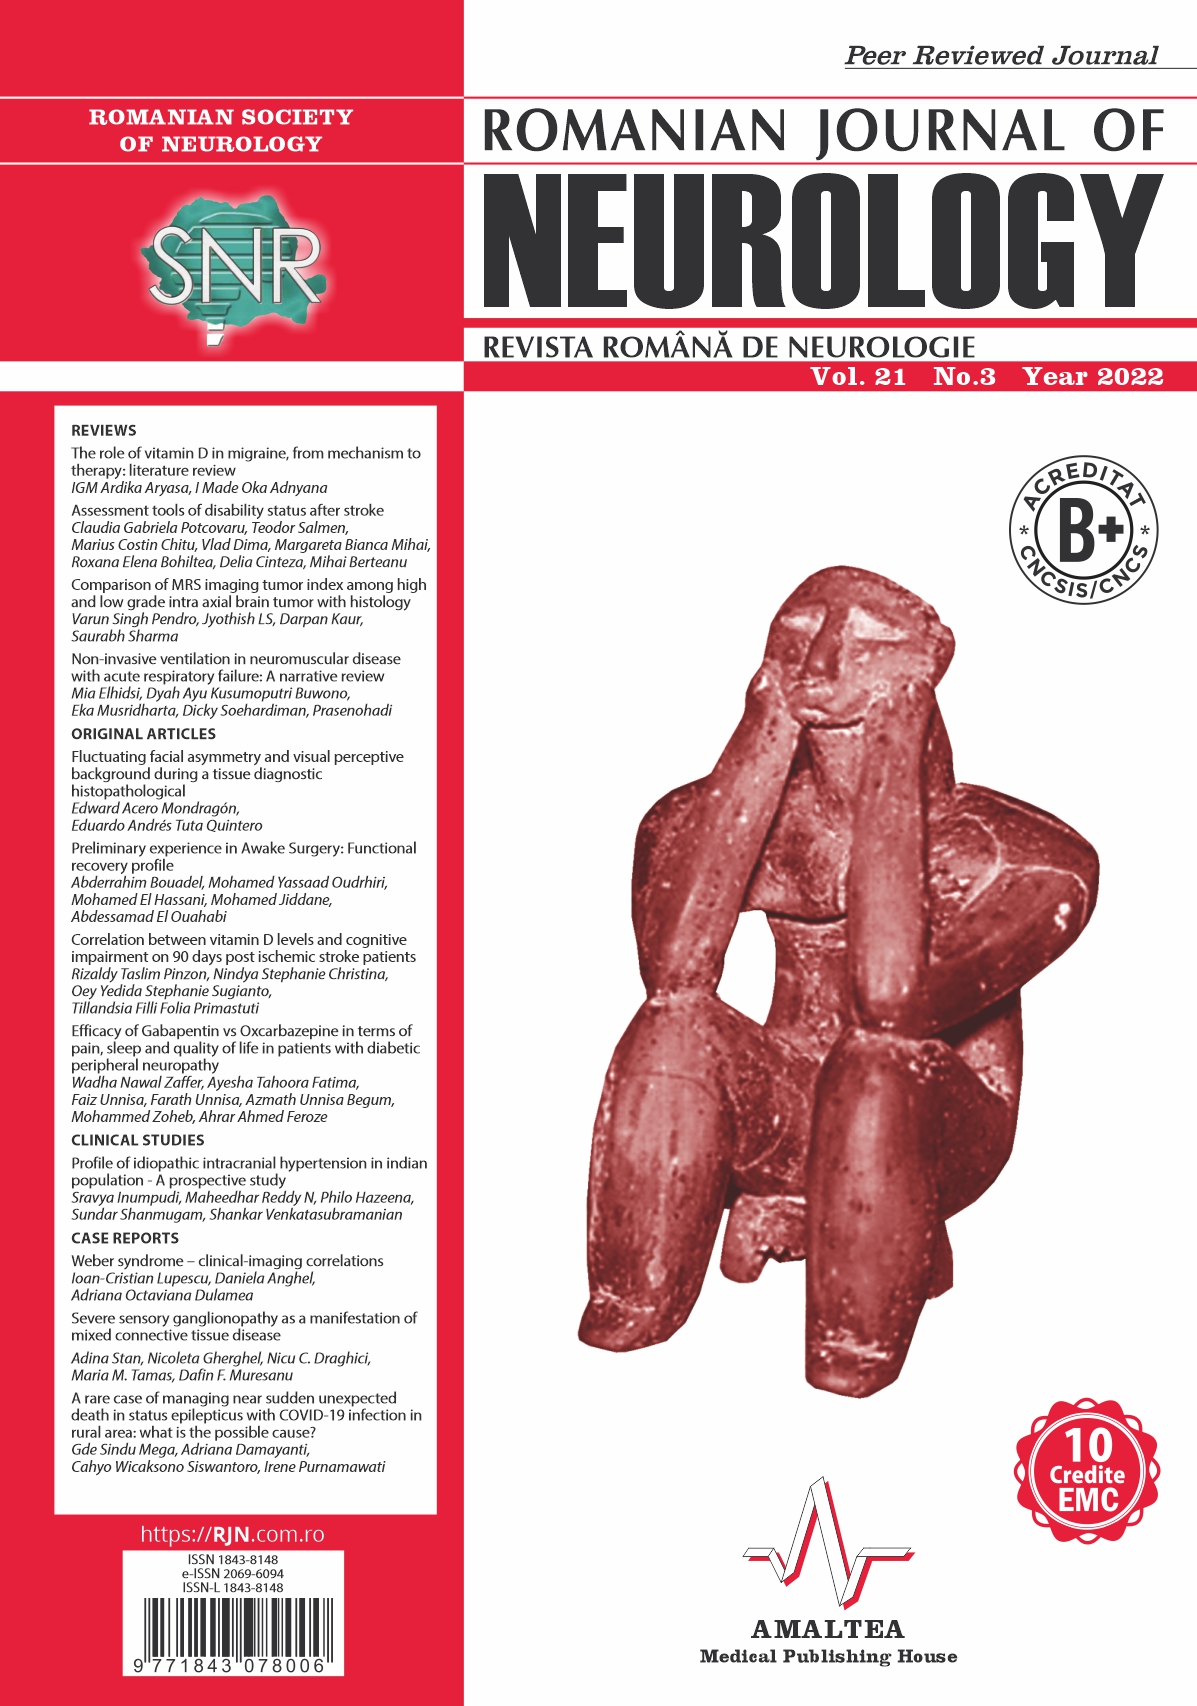 Romanian Journal of Neurology, Volume 21, No. 3, 2022